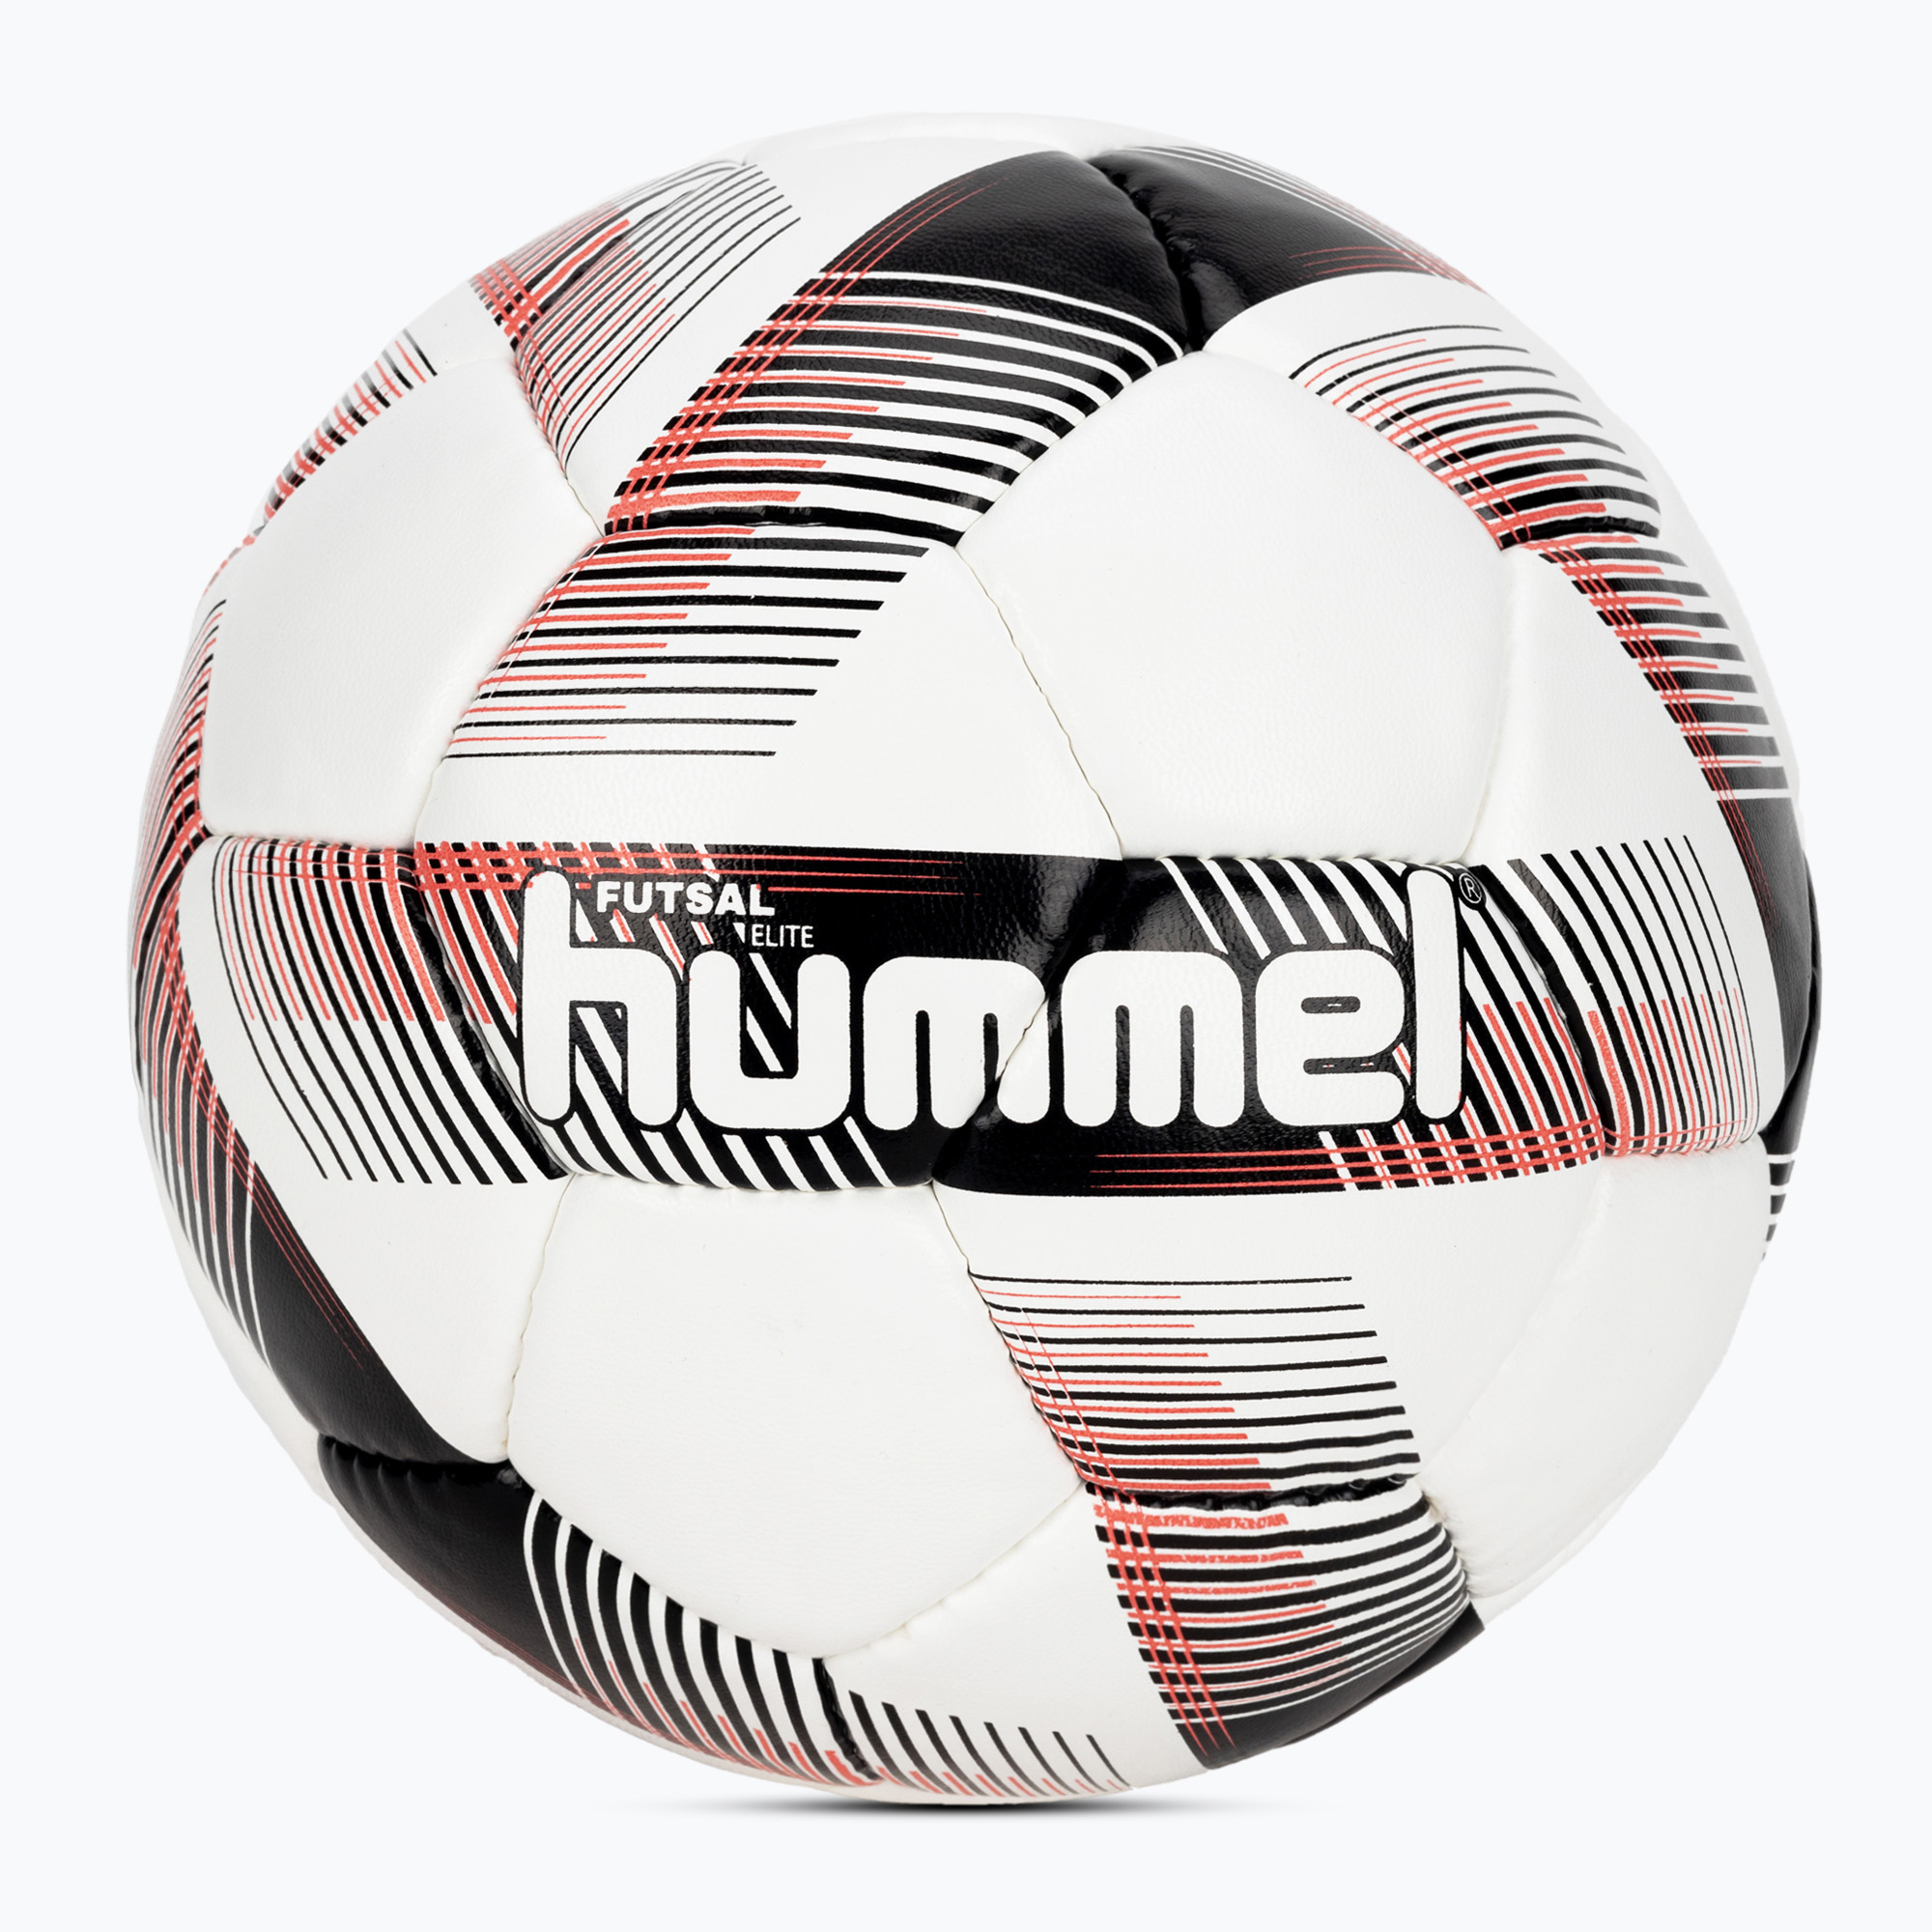 Hummel Futsal Elite FB футболна топка бяла/черна/червена размер 4